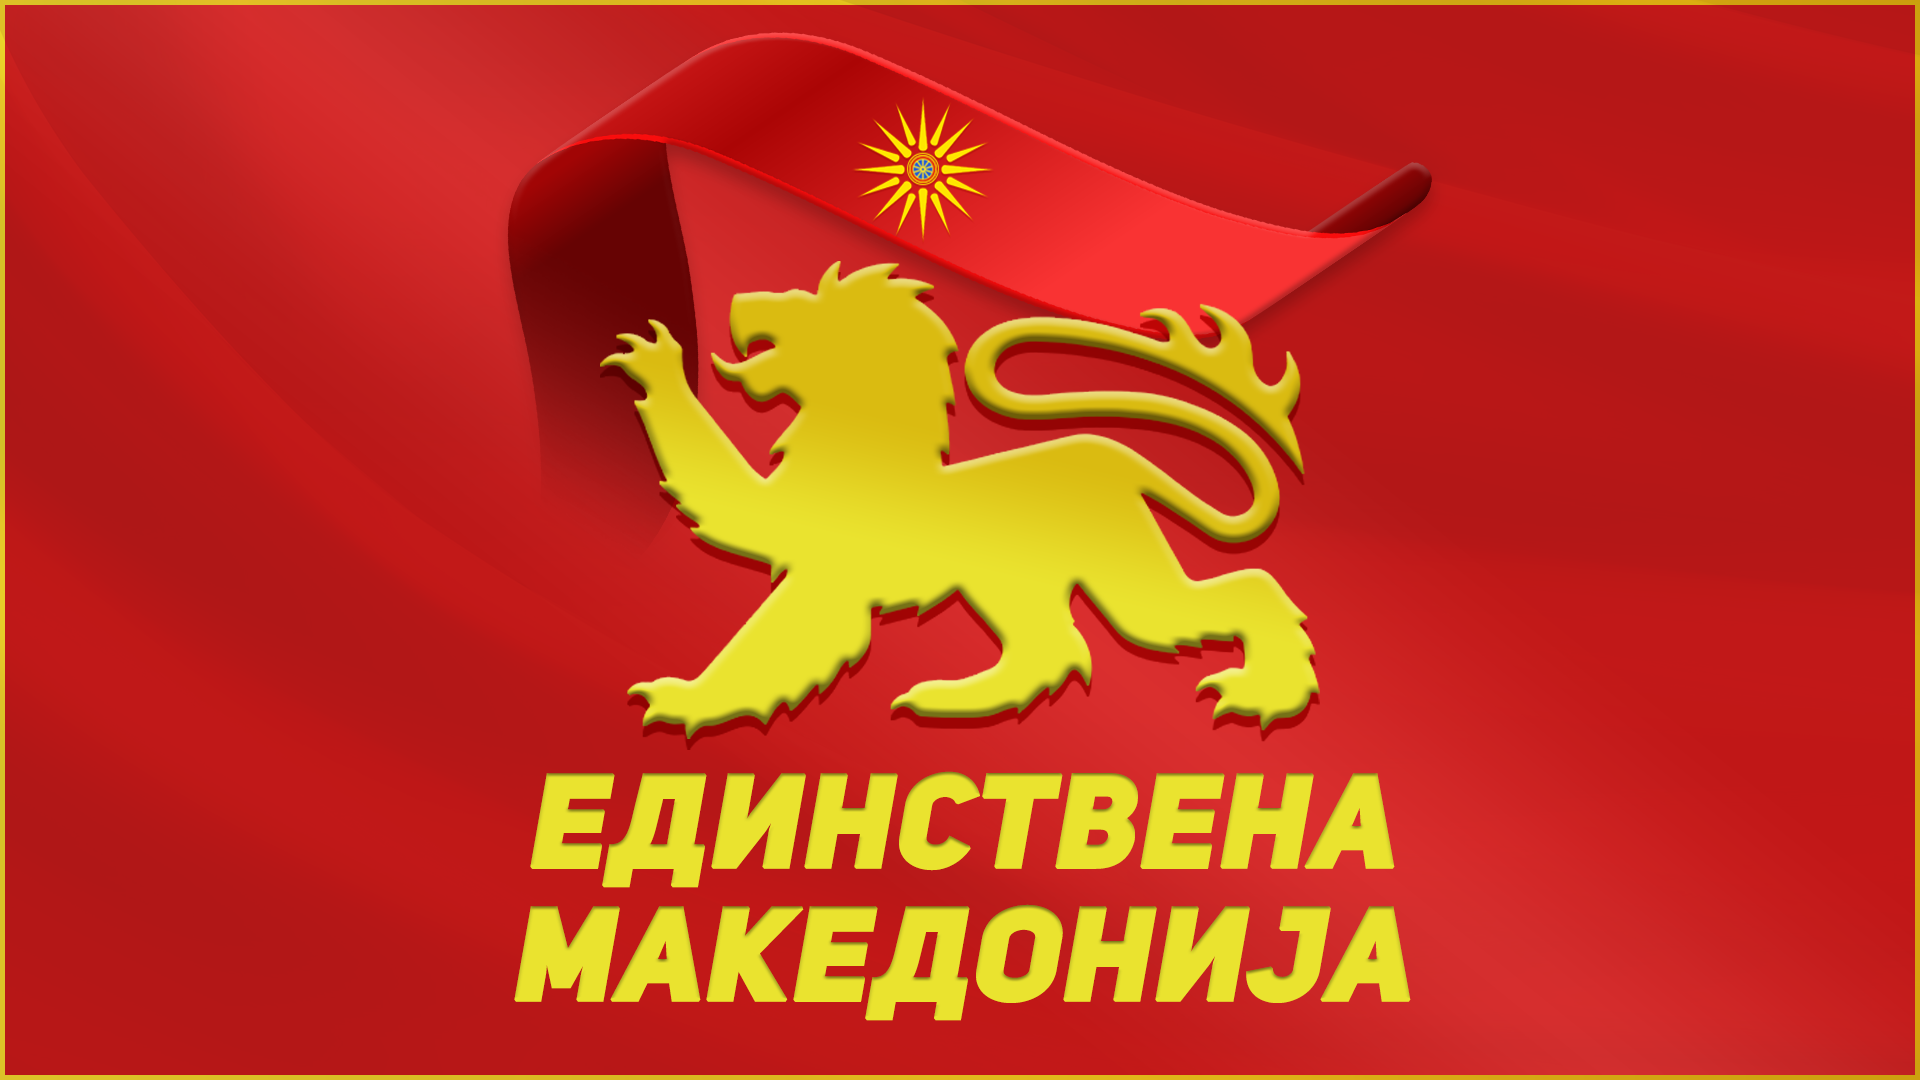 Единствена Македонија: Случајот со бугарскиот конзул покажа дека Македонија е вазална држава со ограничен меѓународен субјективитет 